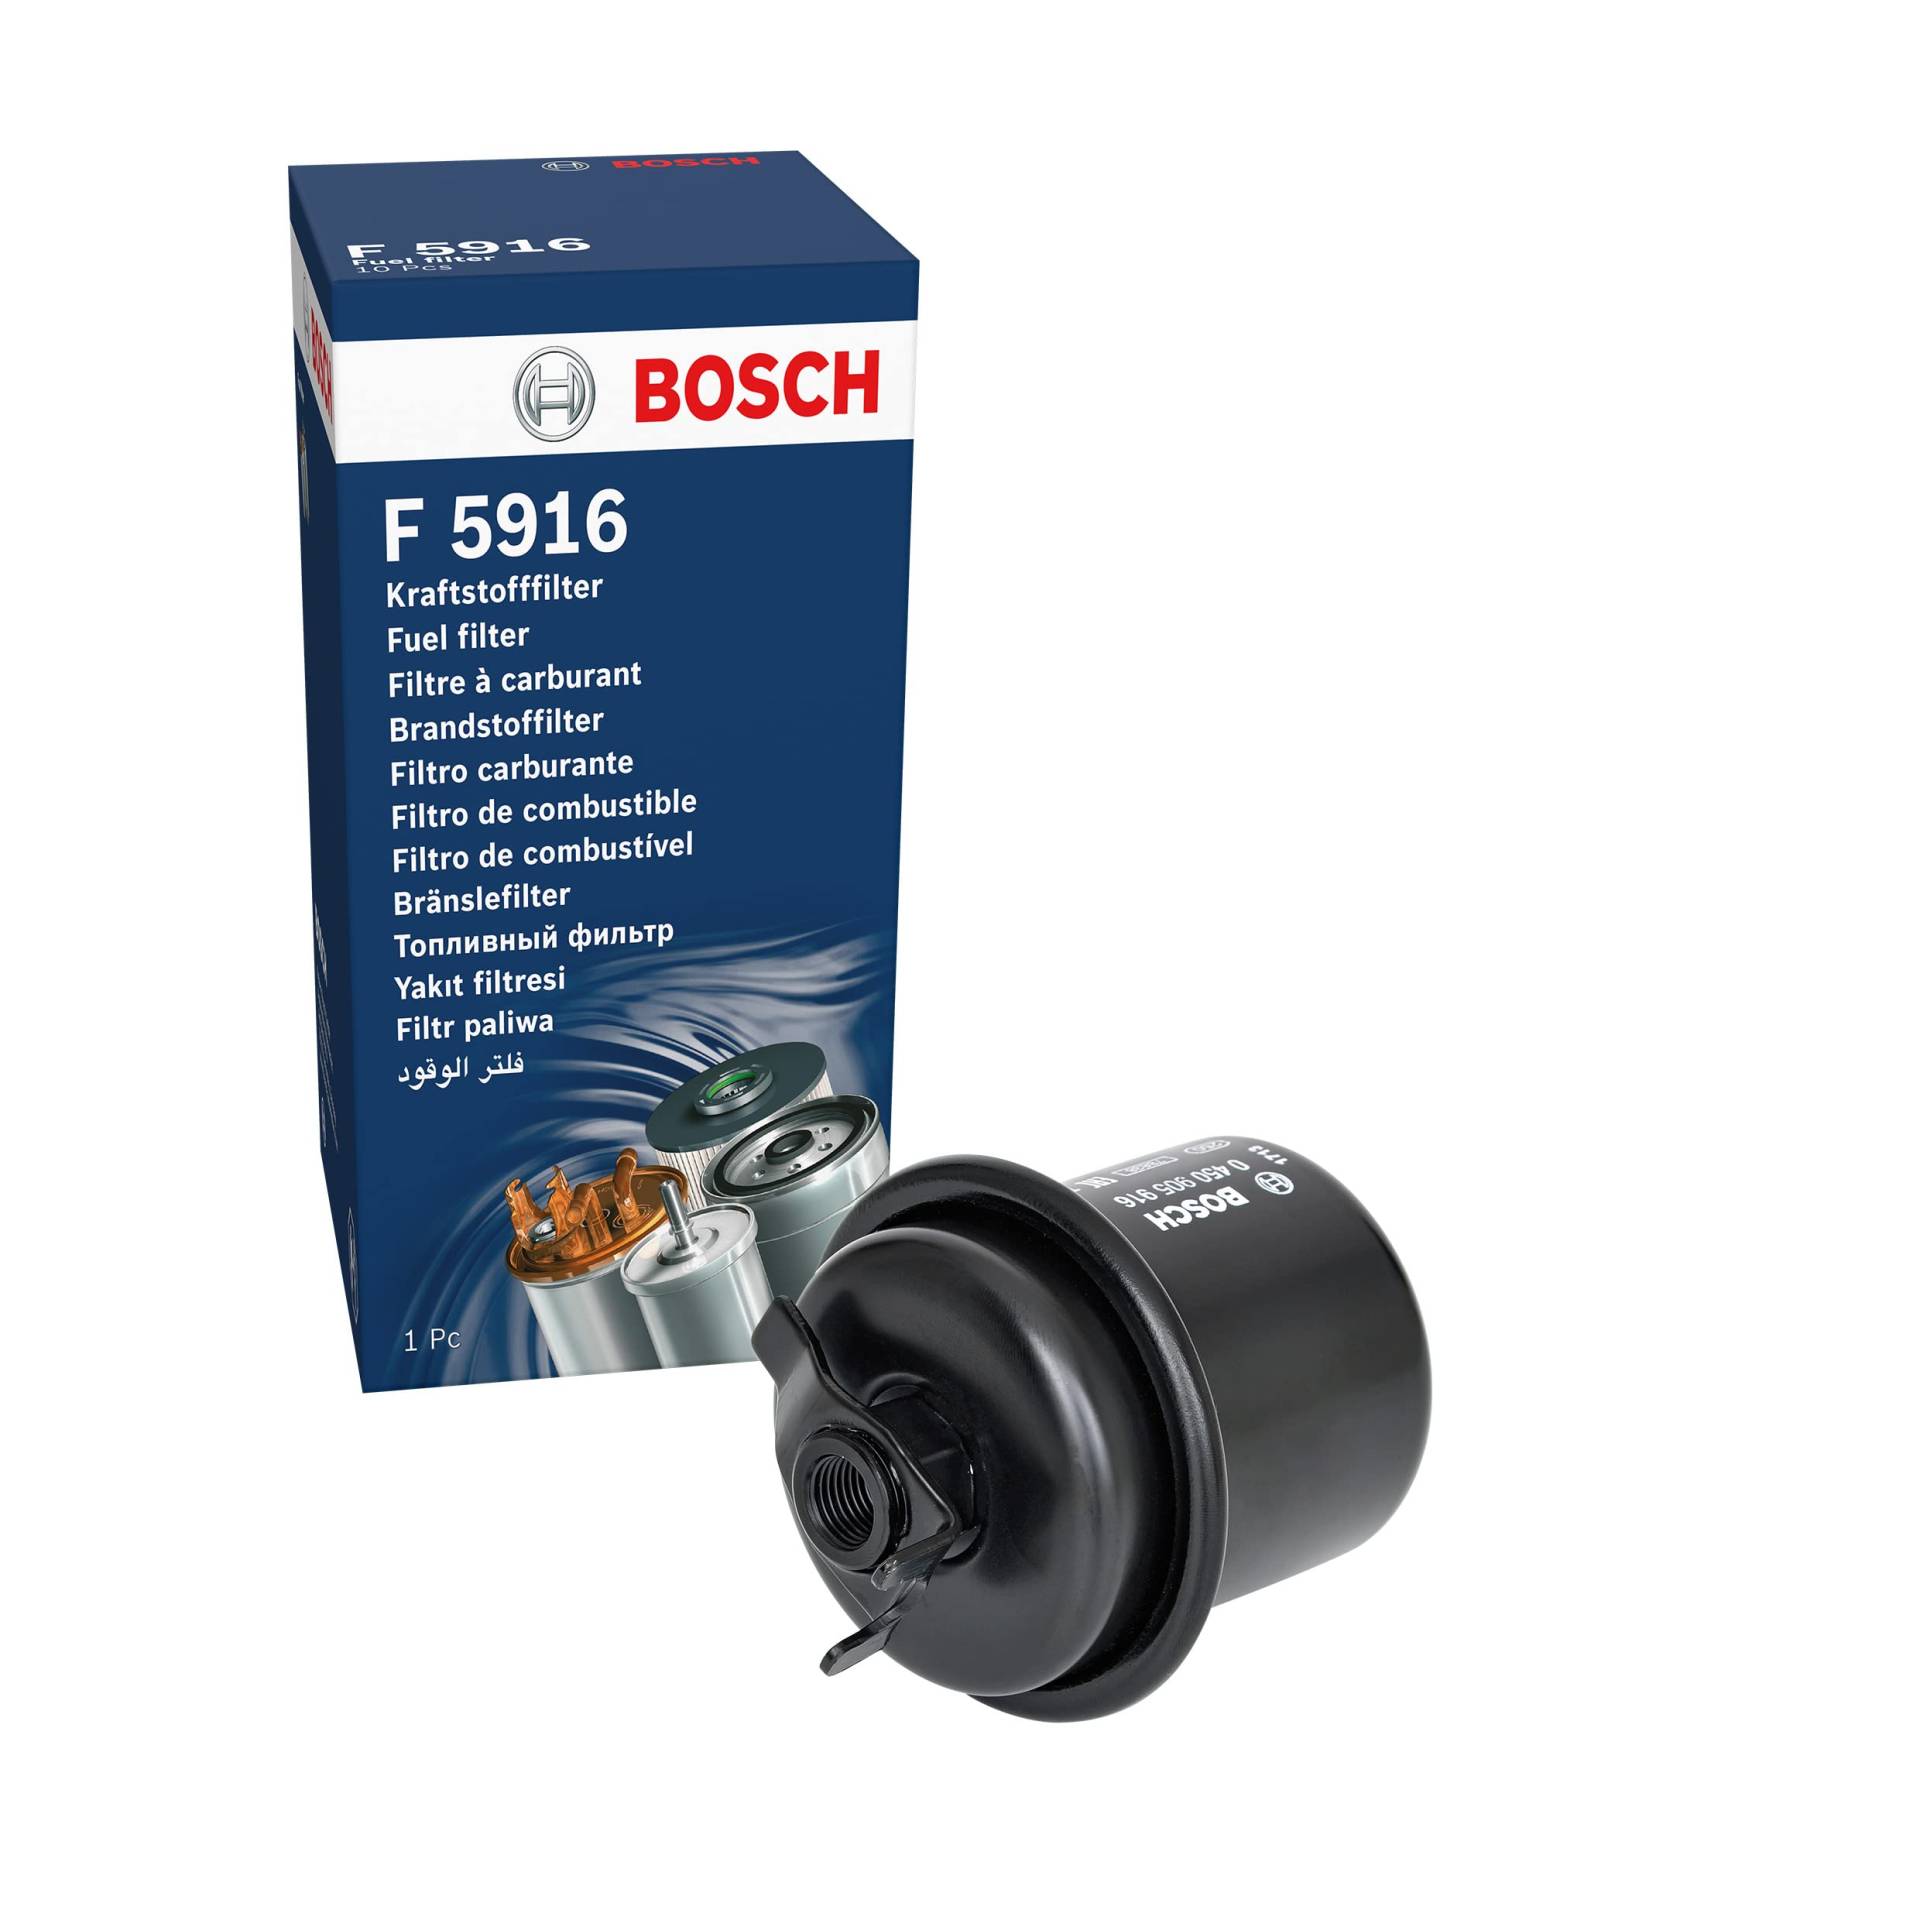 Bosch F5916 - Benzinfilter Auto von Bosch Automotive